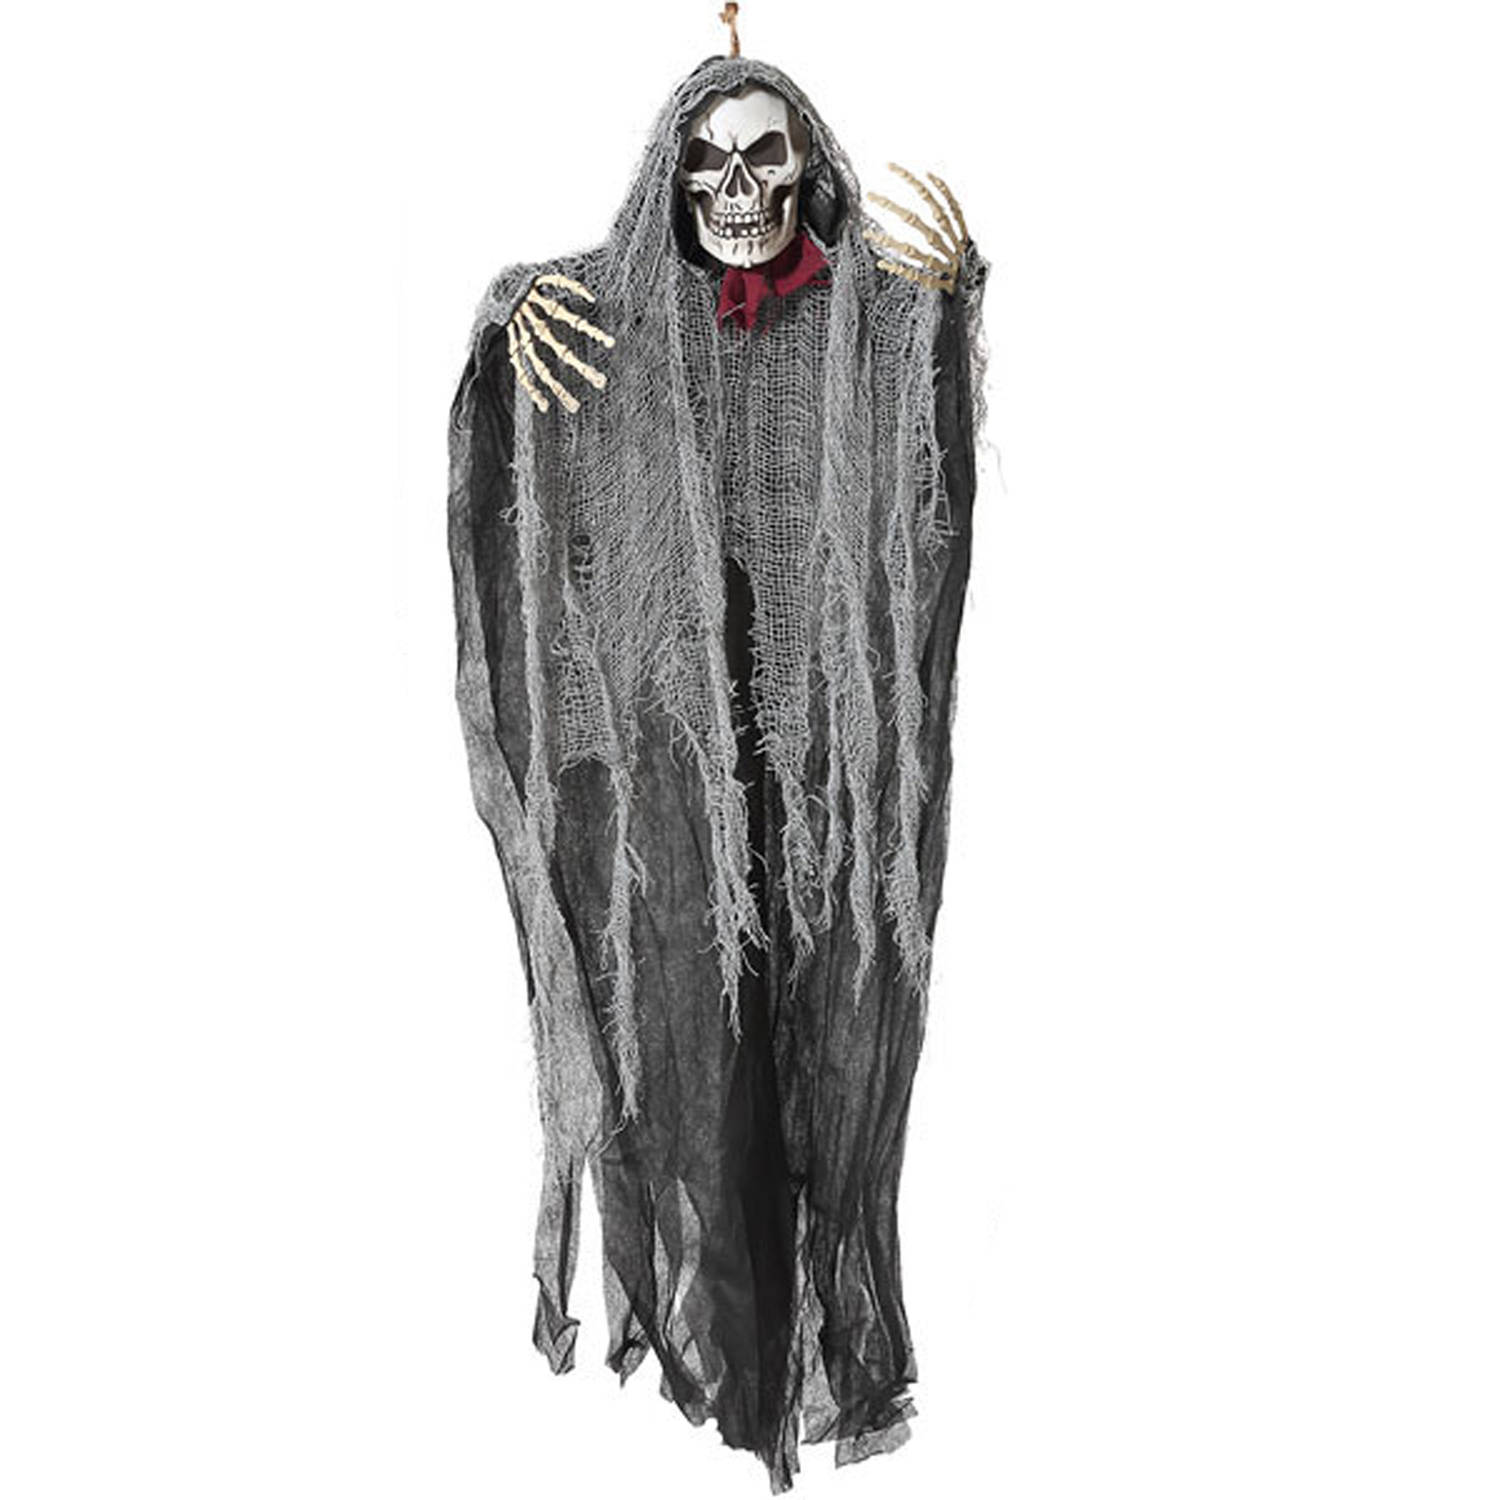 Halloween-horror thema hang decoratie spook-skelet enge-griezelige pop 100 cm Feestdecoratievoorwerp